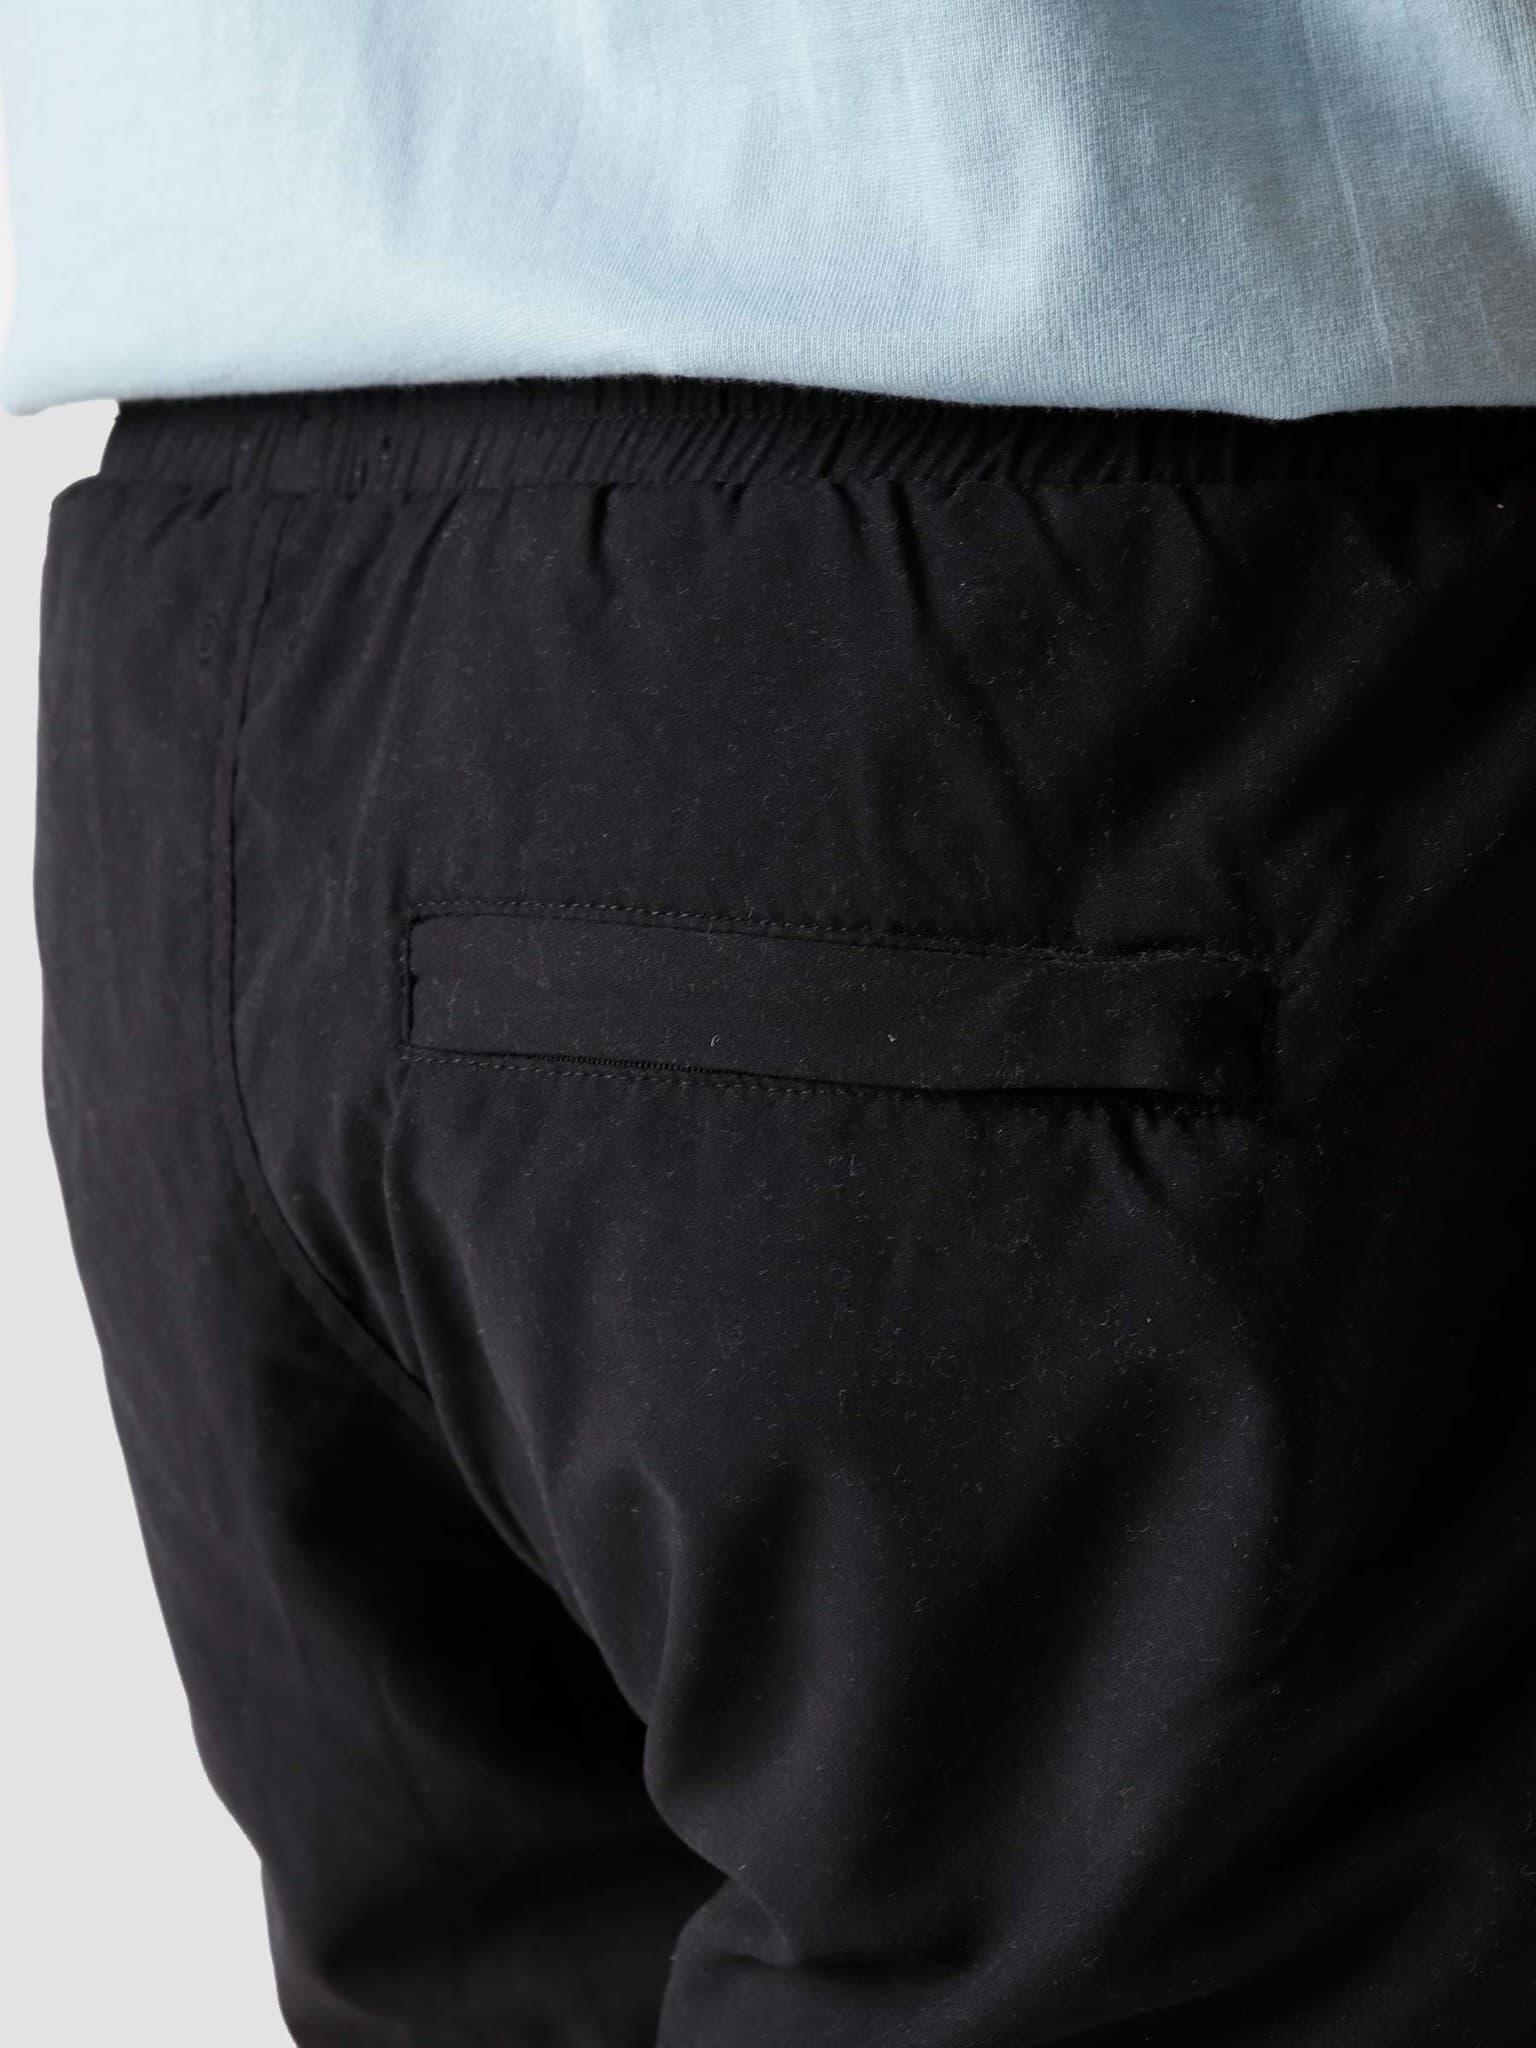 QB35 Technical Shorts Black